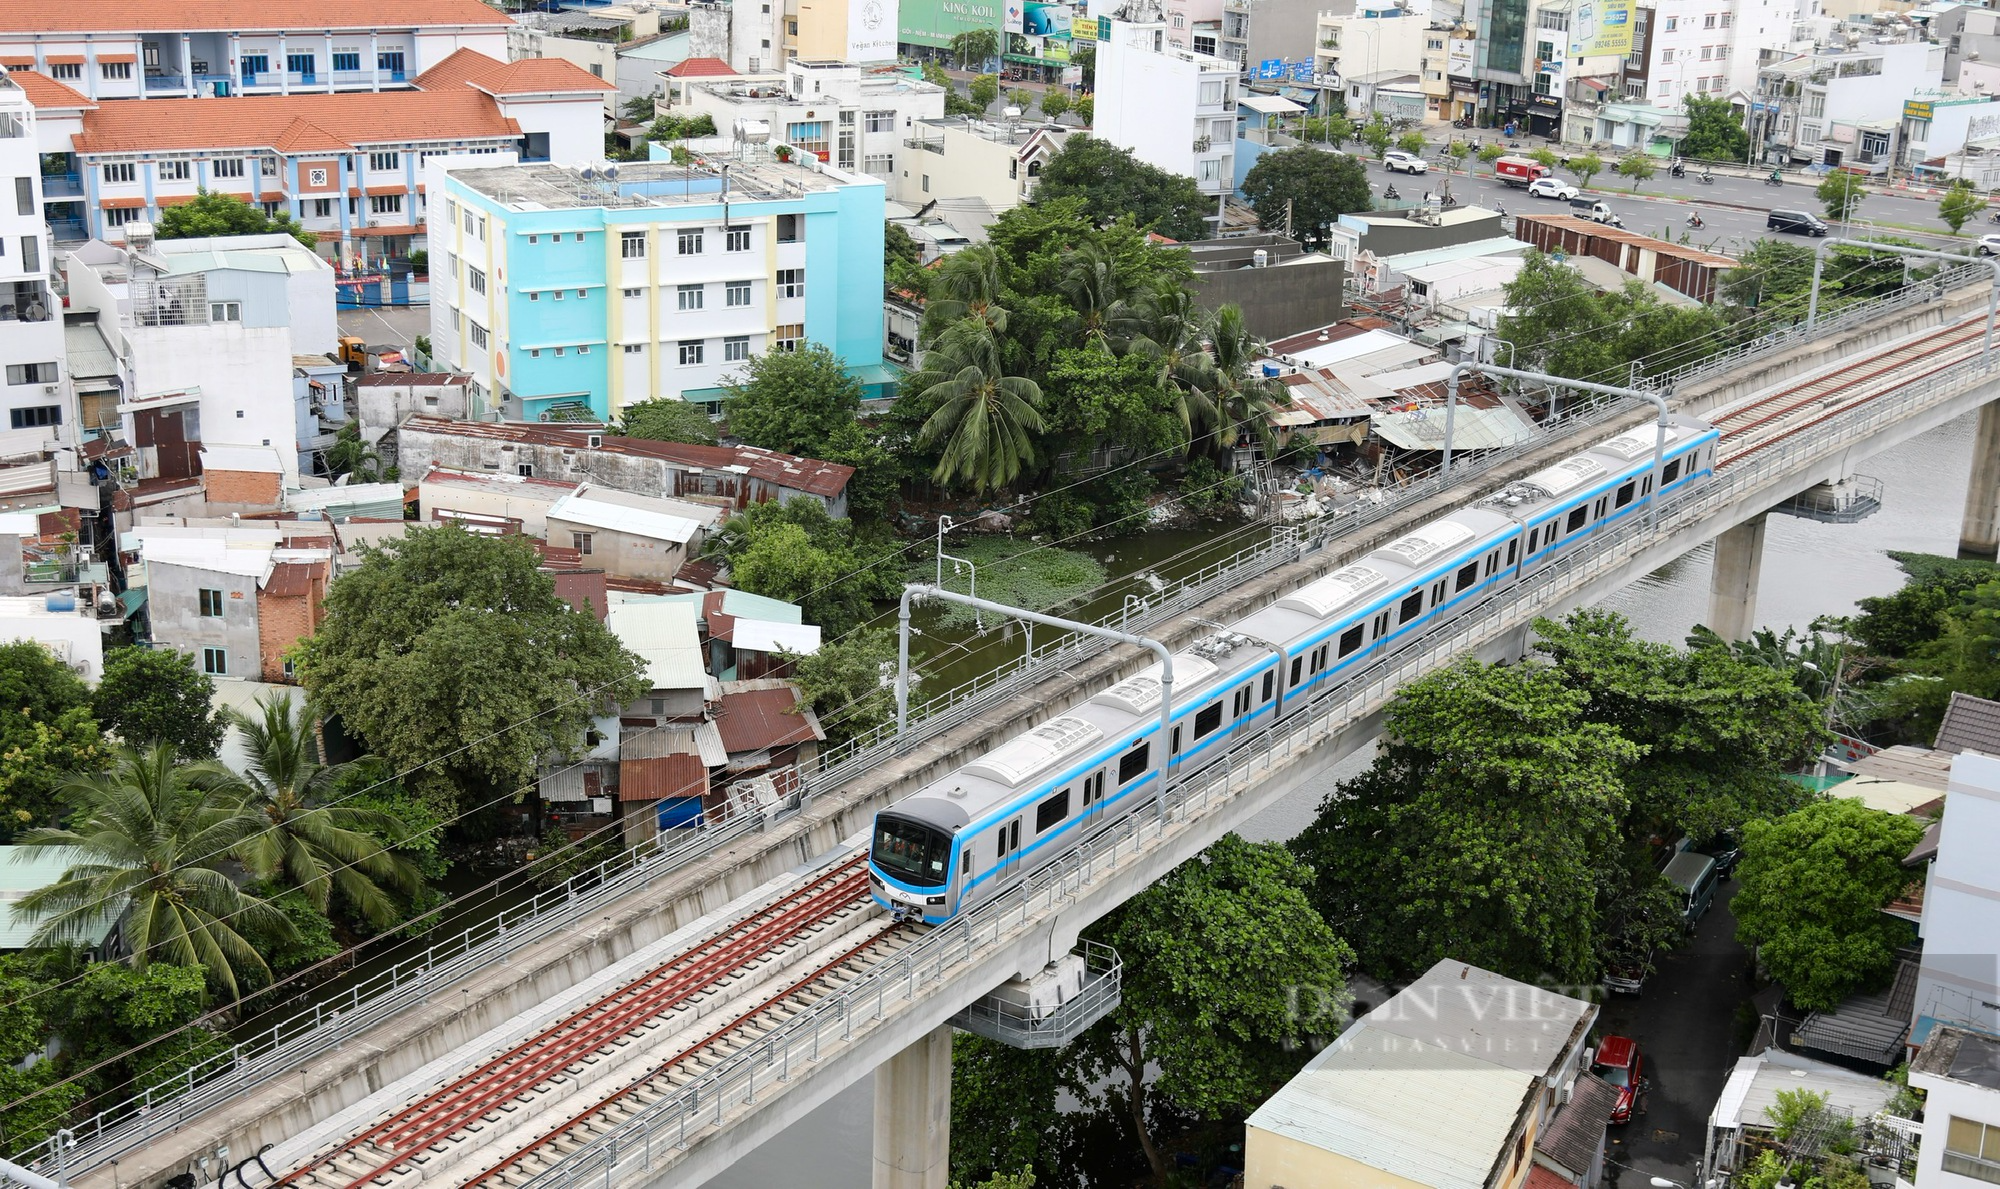 Chiêm ngưỡng đoàn tàu Metro Bến Thành - Suối Tiên chạy thử nghiệm toàn tuyến - Ảnh 12.